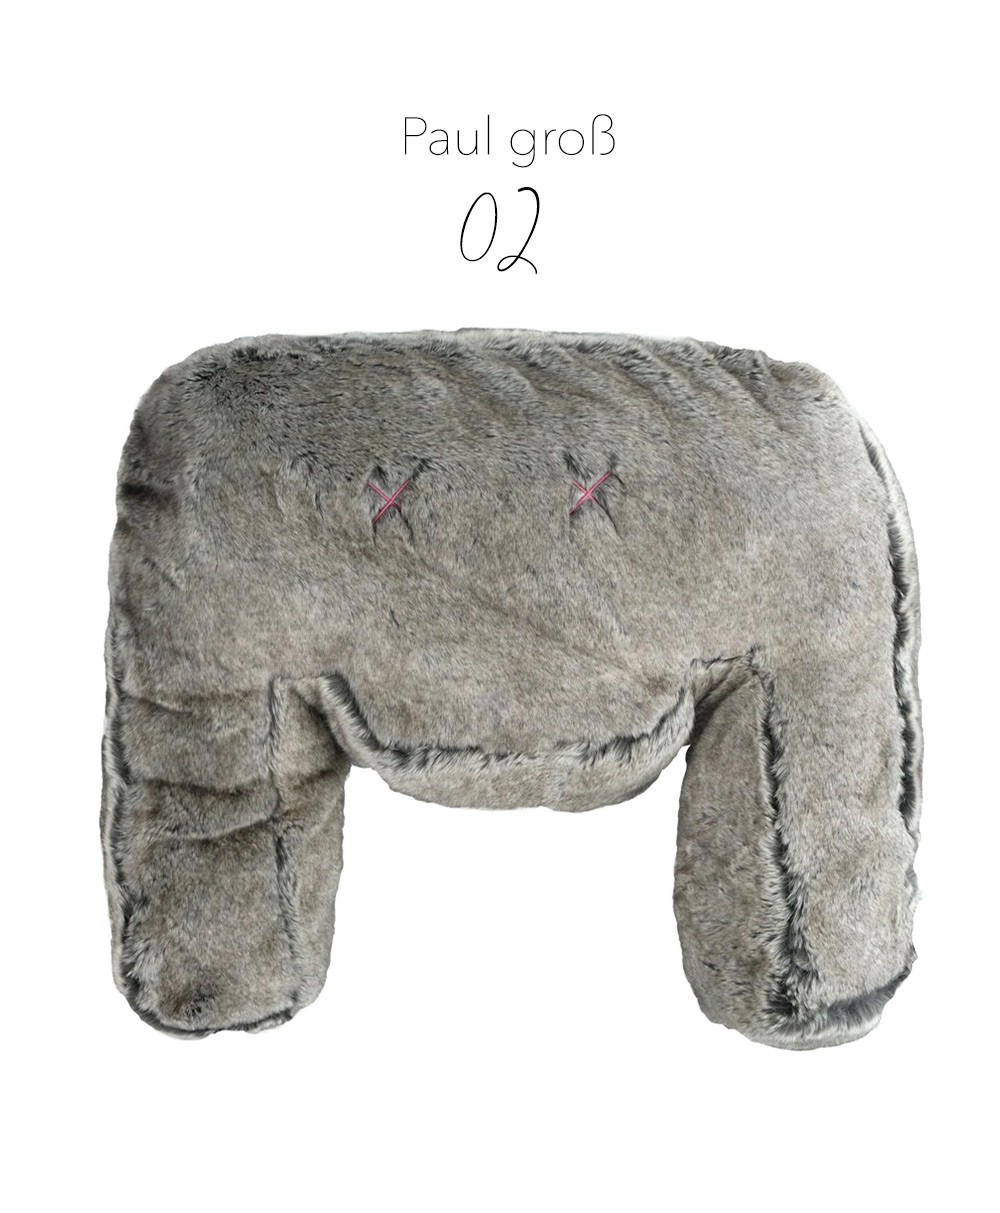 Produktbild des "Monster Paul groß"  des Herstellers LPJ im RAUM Conceptstore